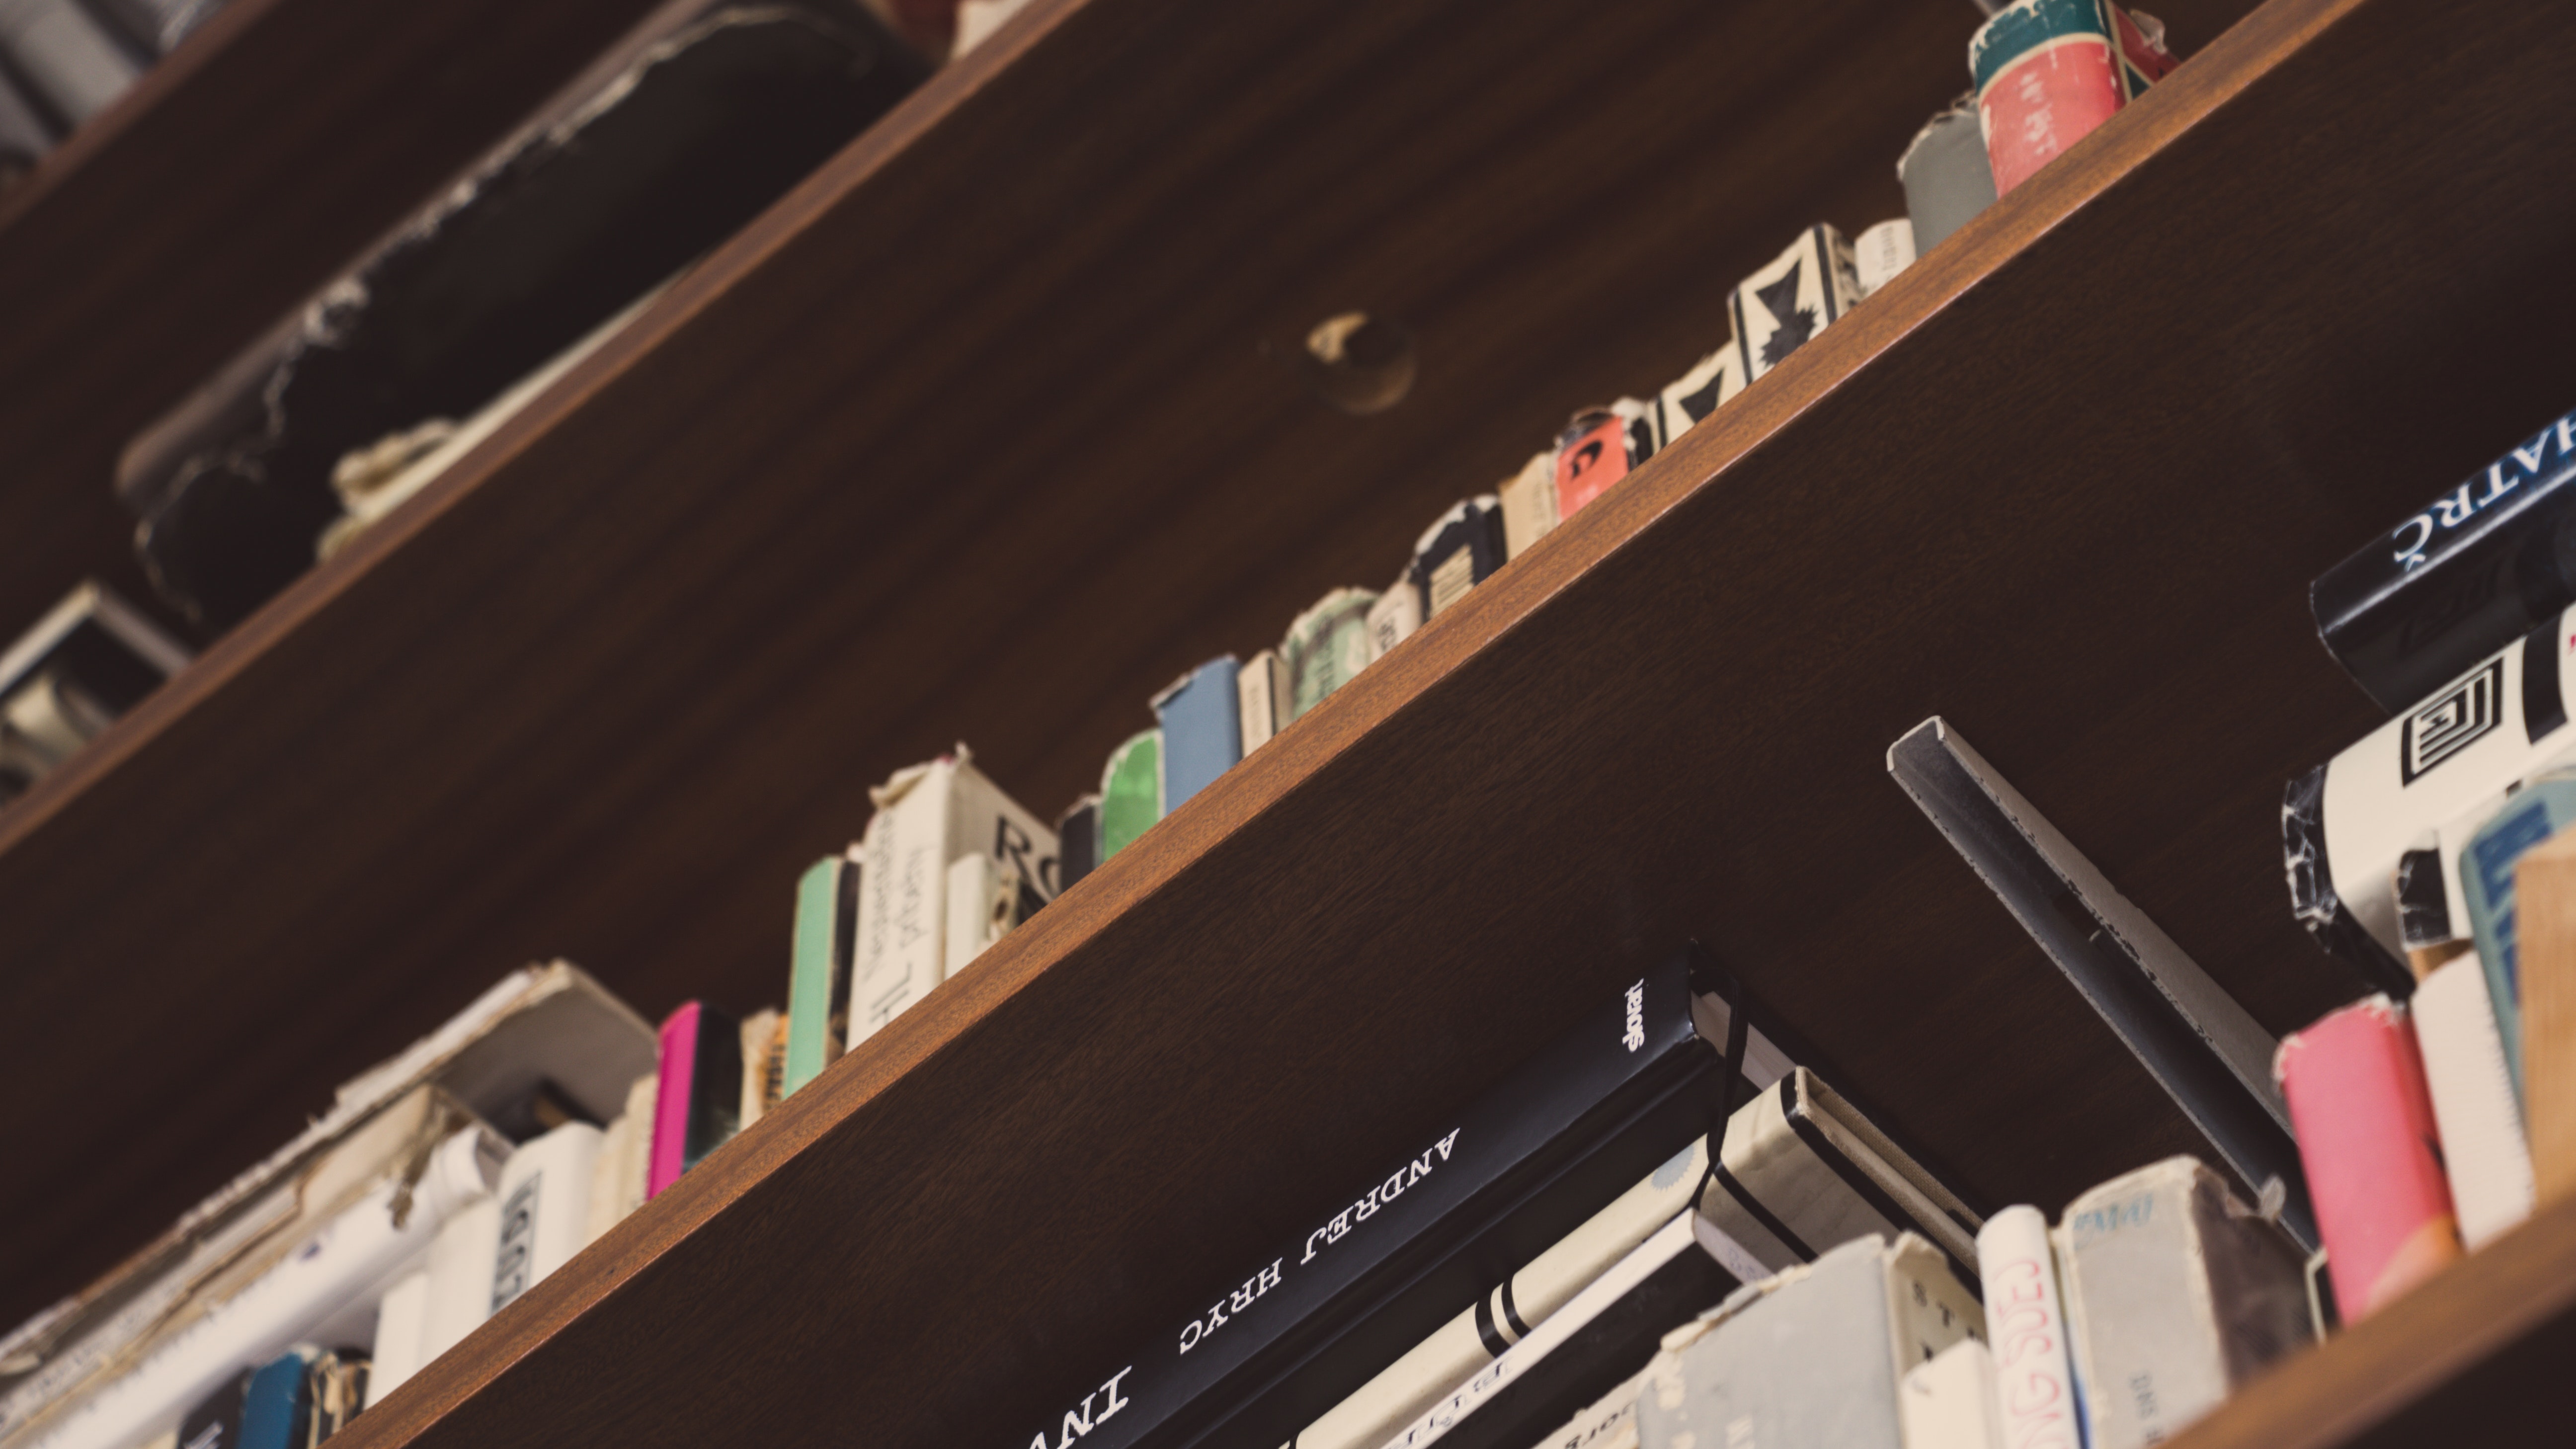 small shelf for books